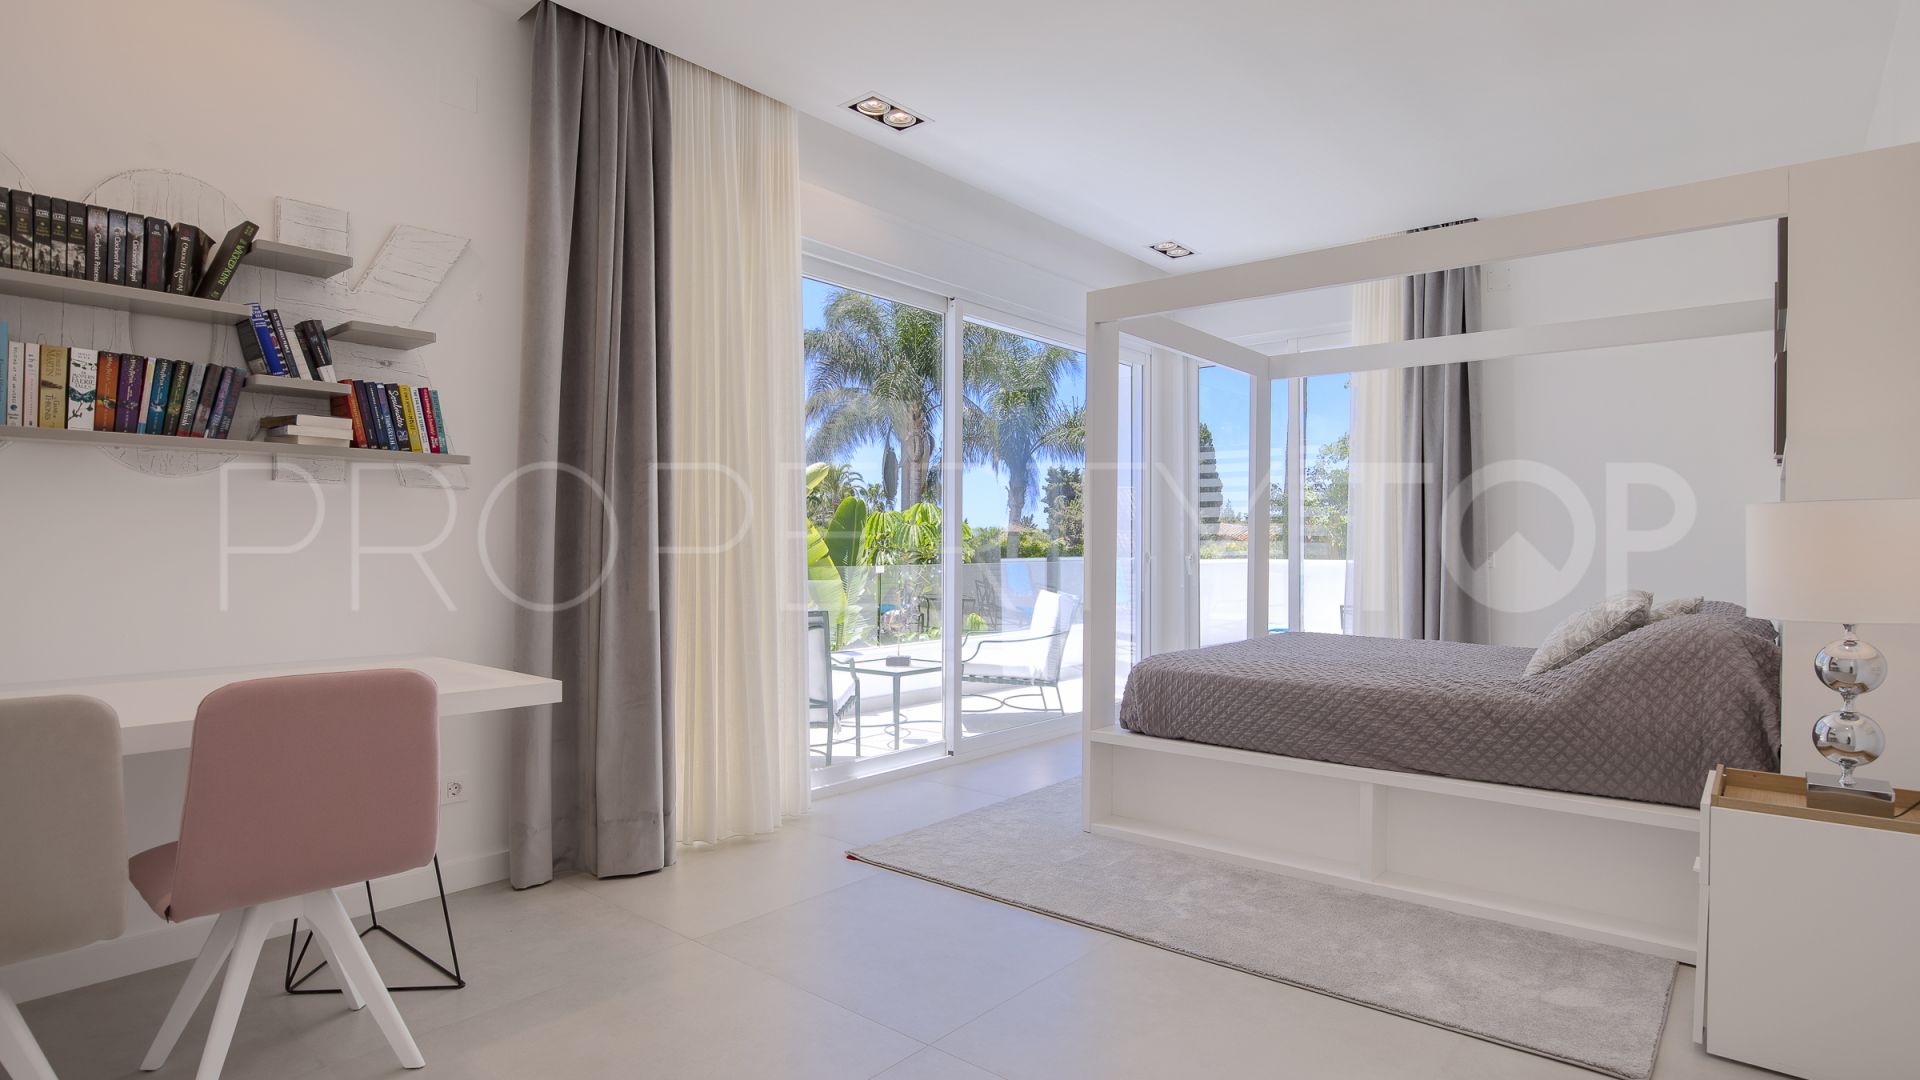 For sale 6 bedrooms villa in Guadalmina Baja